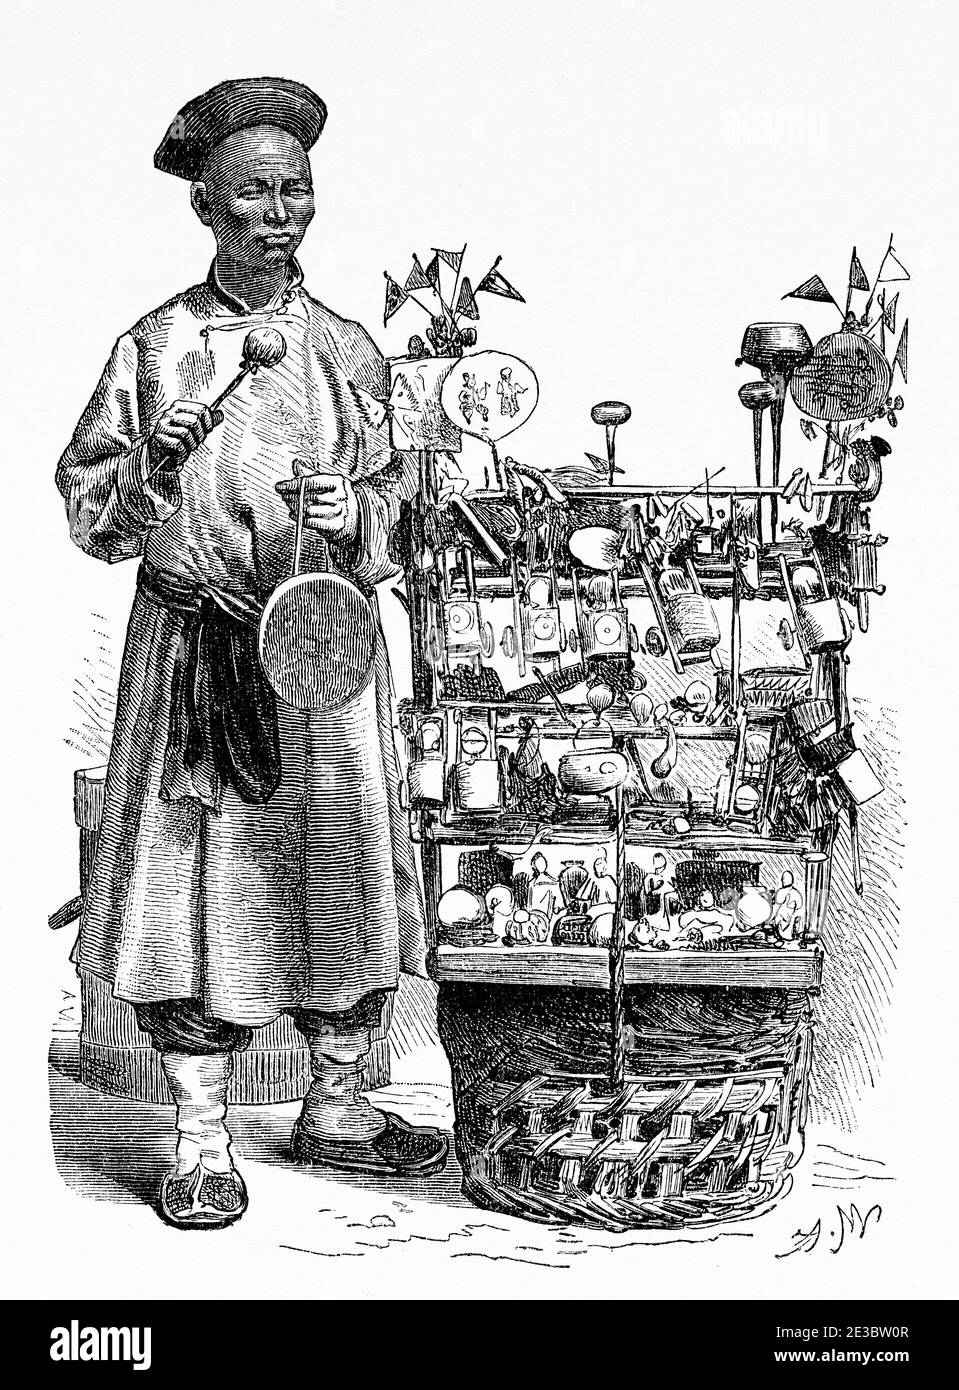 Vendeur de jouets itinérant, Pékin, Chine. Ancienne illustration gravée du XIXe siècle, Voyage à Pékin et Chine du Nord 1873 Banque D'Images